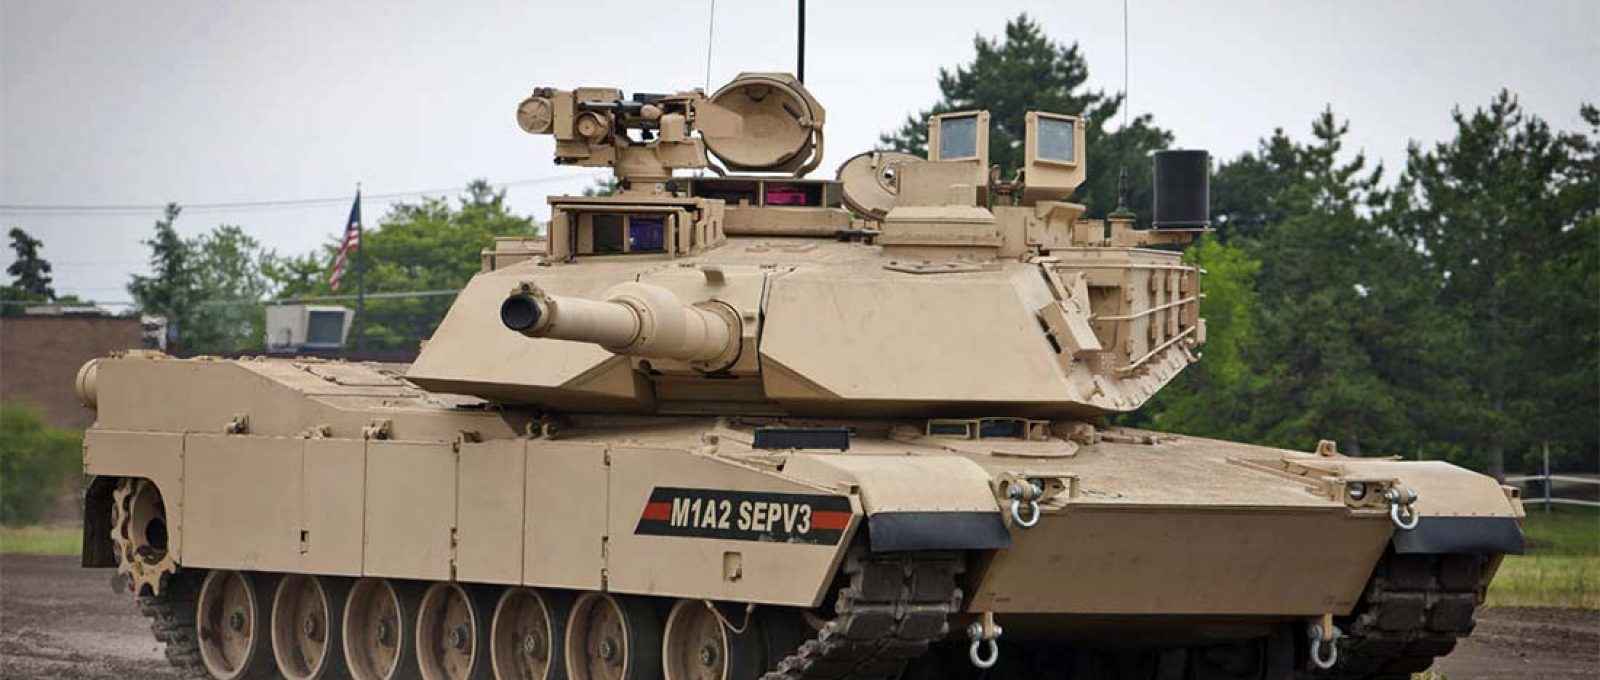 O carro de combate Abrams M1A2 SEPv3, em imagem de 15 de julho de 2021 (Levo1Desno2/CC BY-SA 4.0).